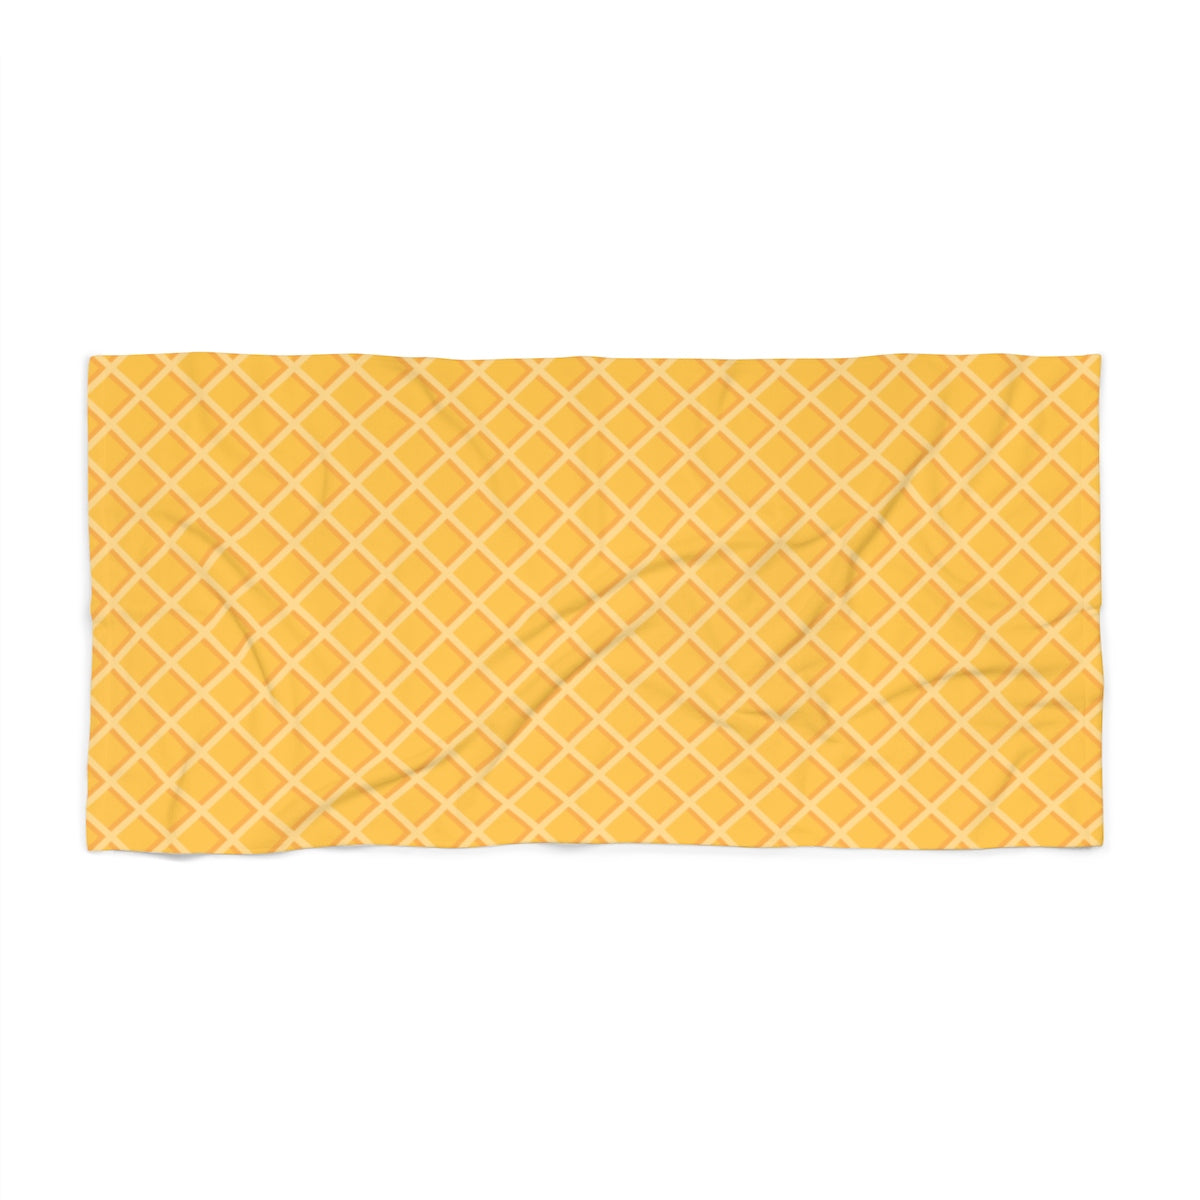 Waffle Beach Towel-36x72-Archethype